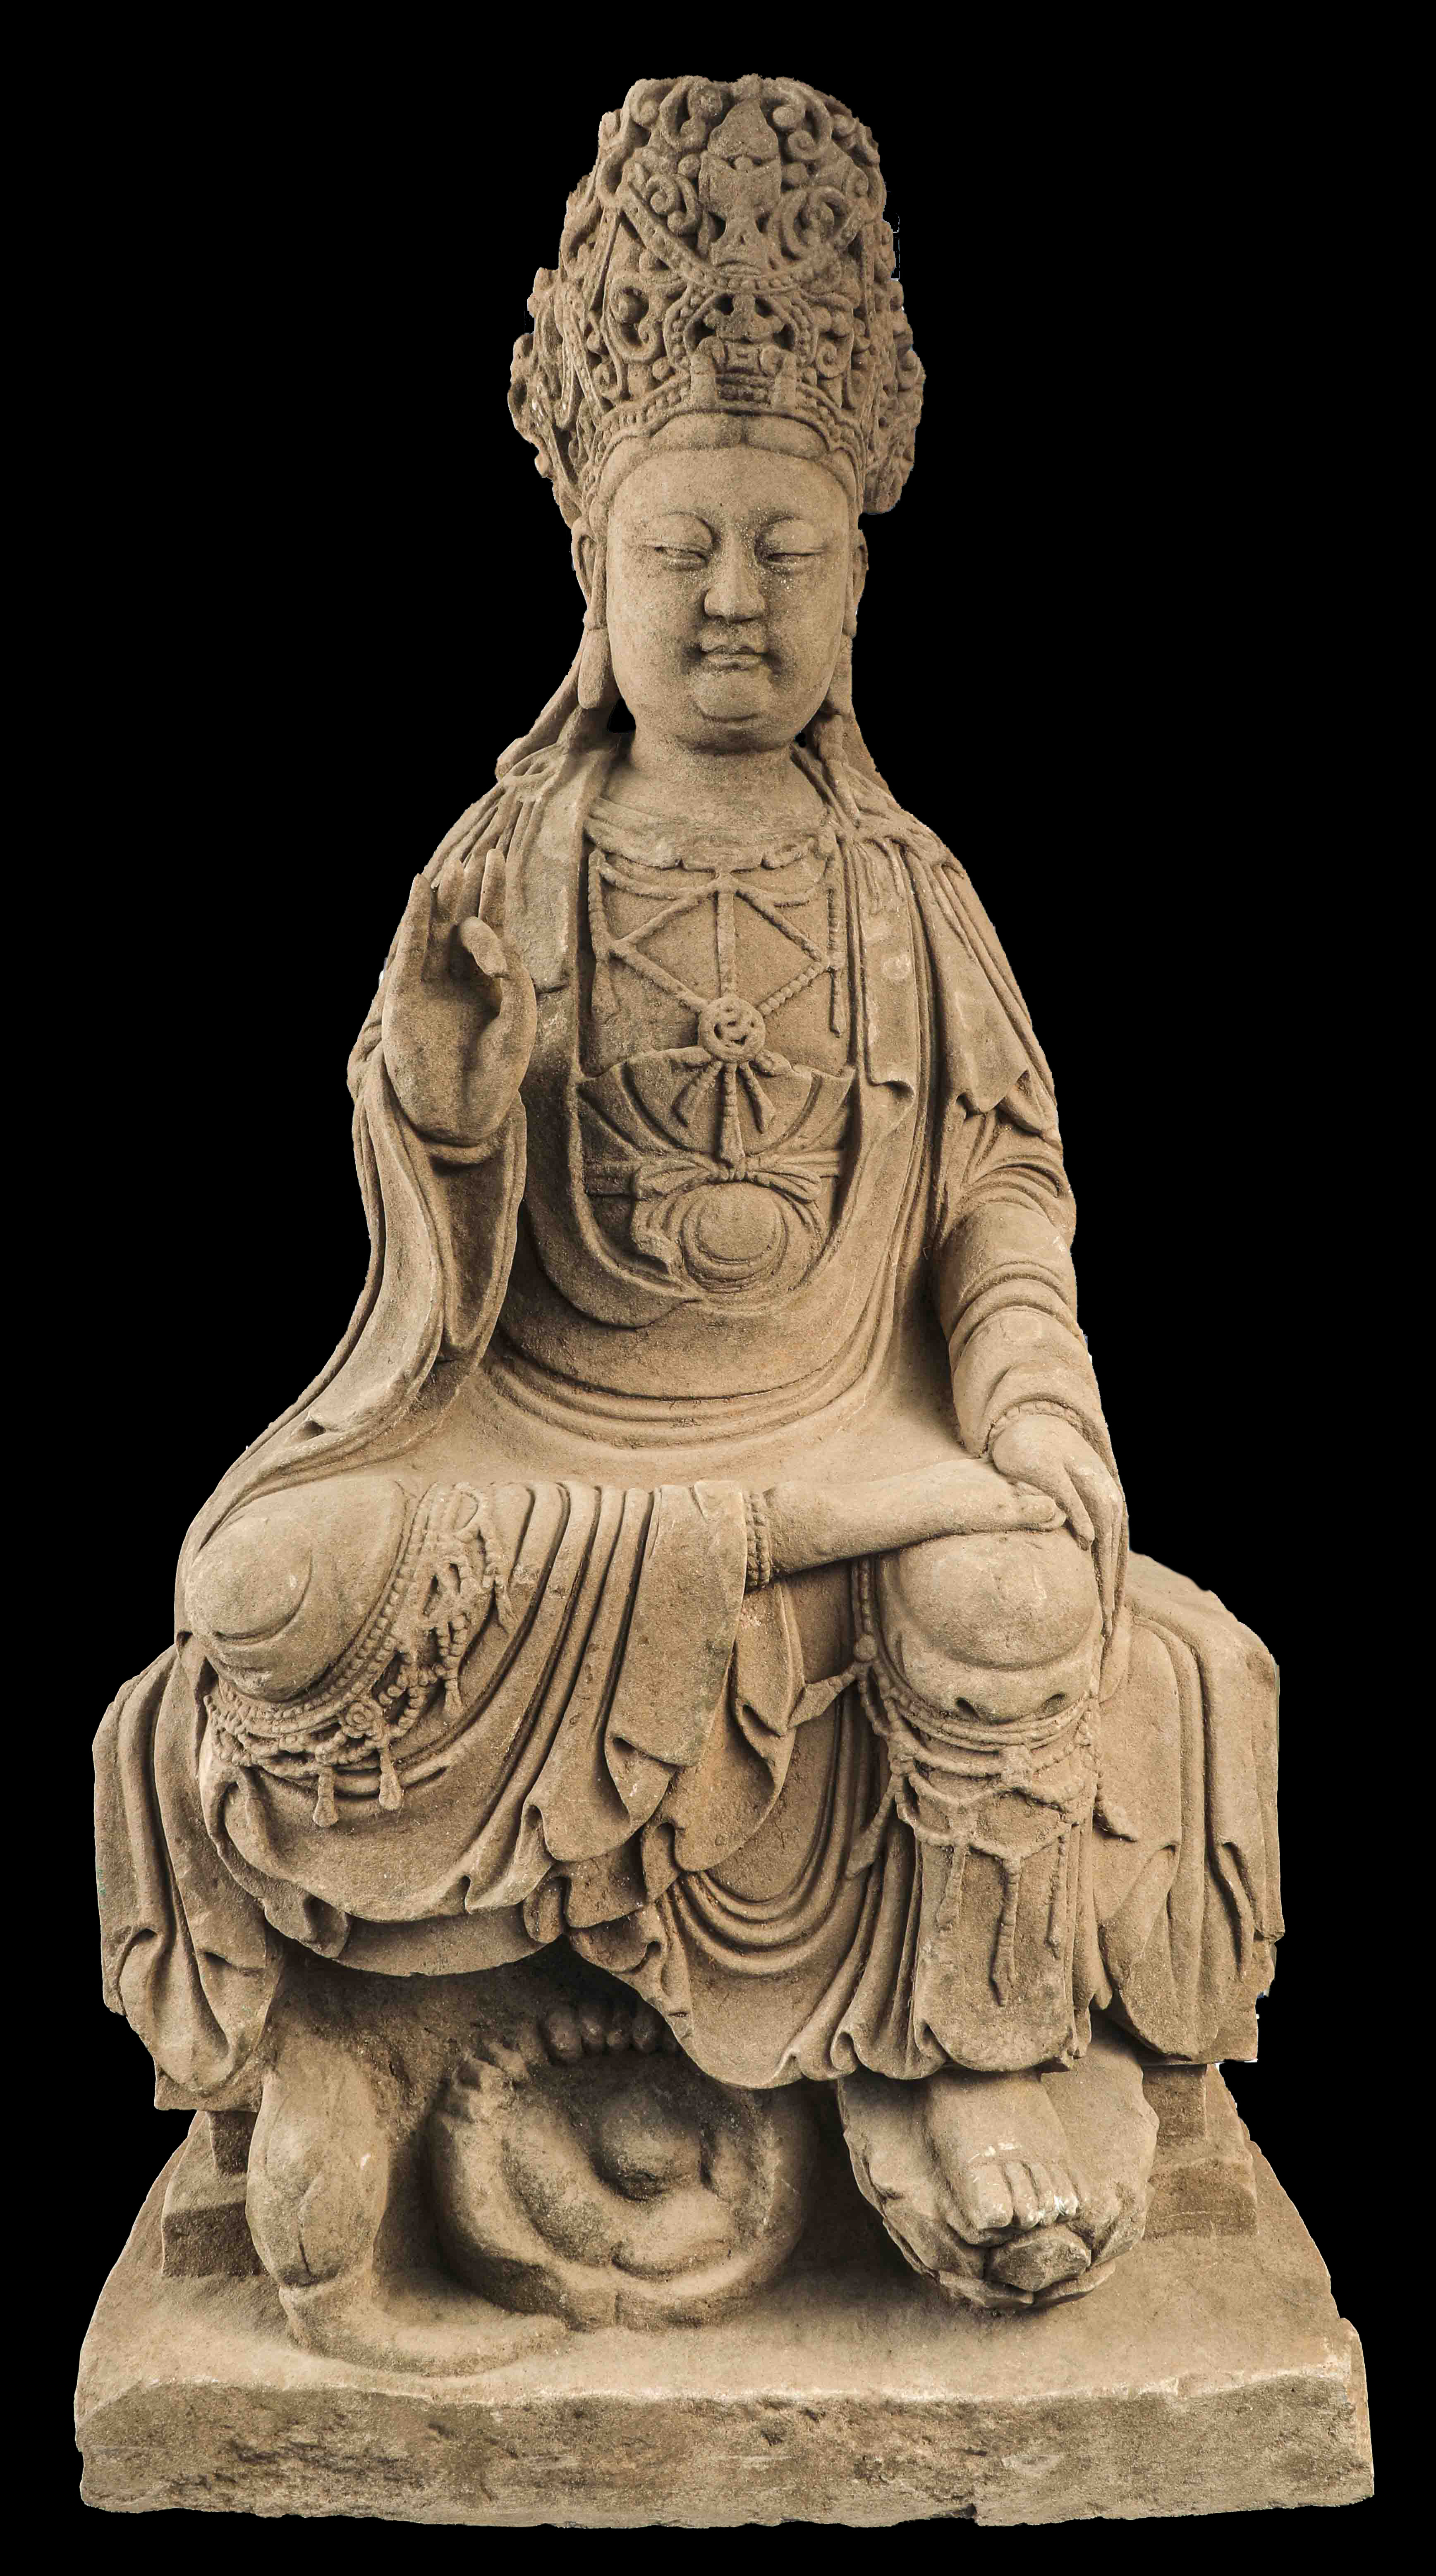 Le Boddhisattva Kwan yin assis en déplacement à l’européenne , vêtu de la robe monastique